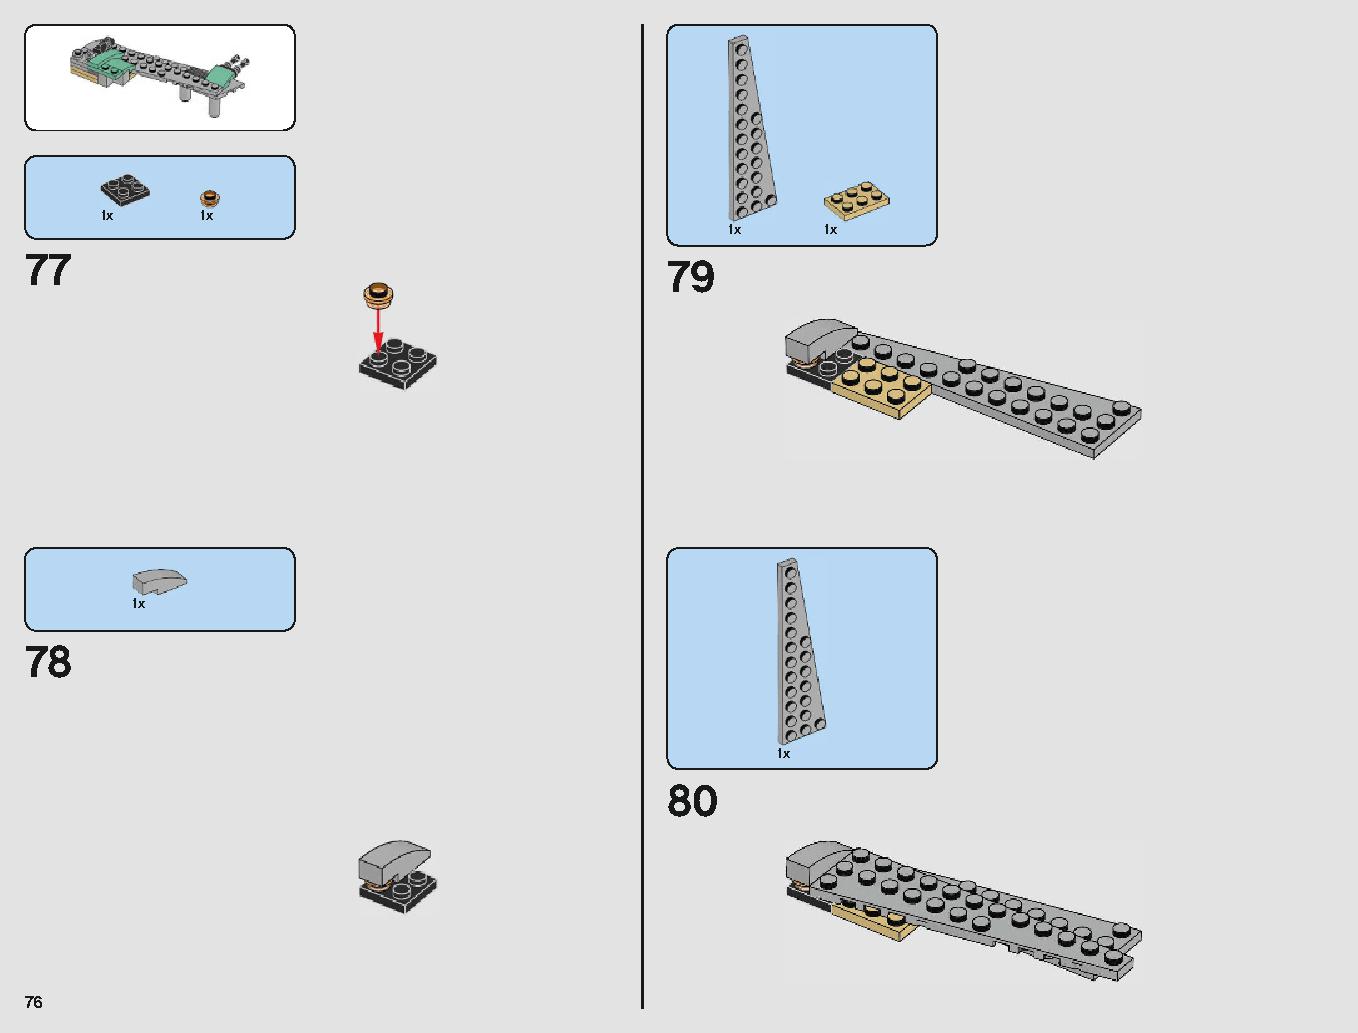 クラウド・シティ 75222 レゴの商品情報 レゴの説明書・組立方法 76 page